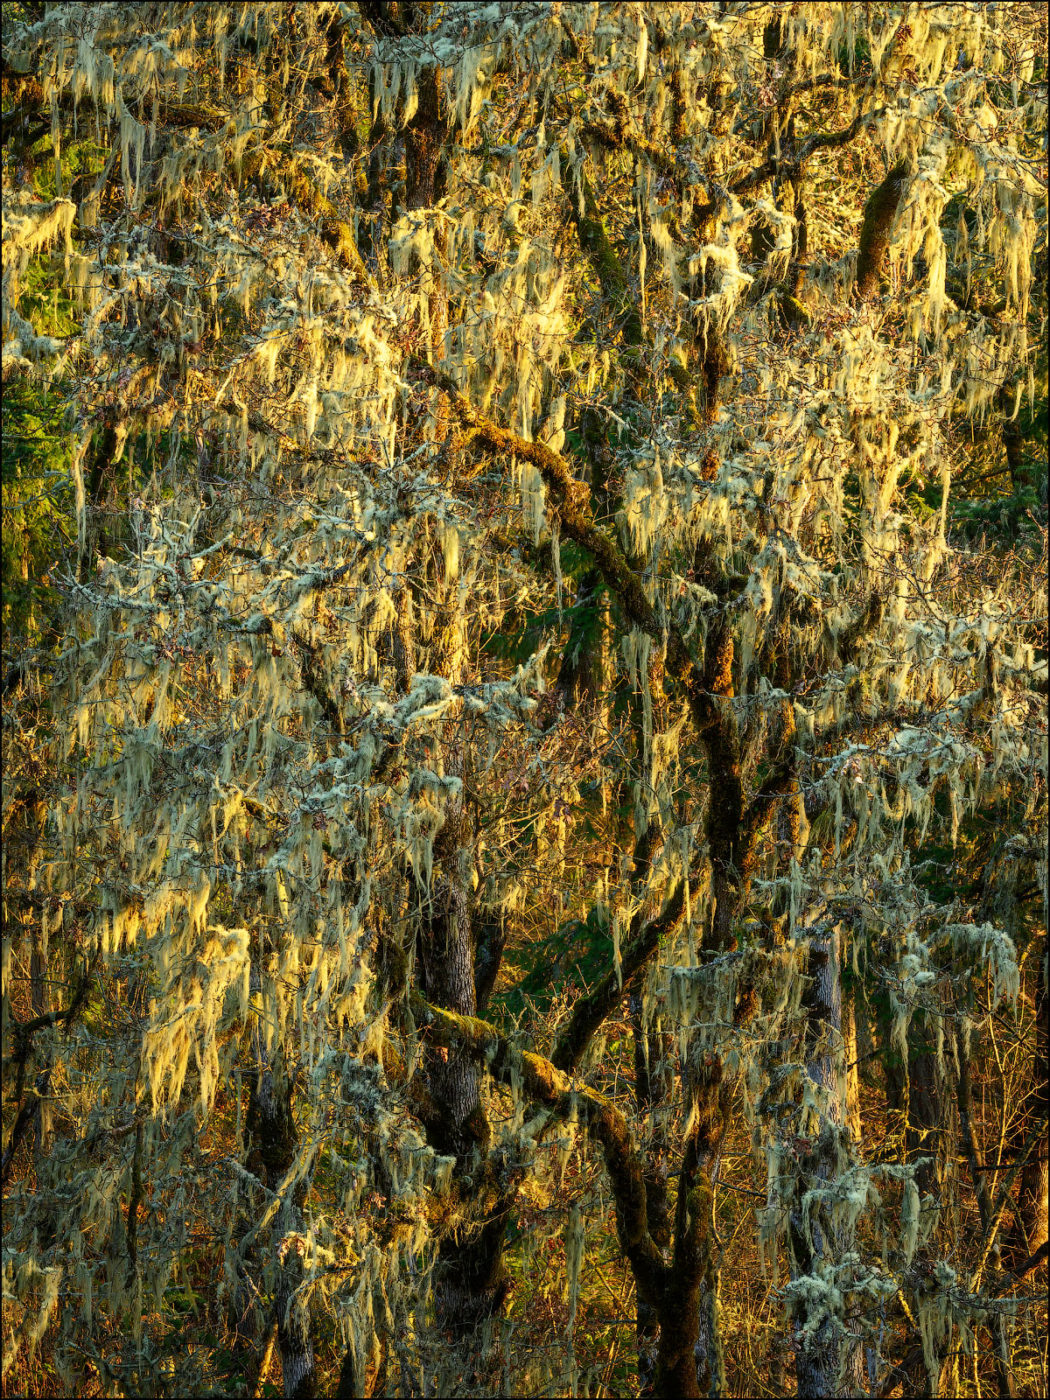 Oak trees and lichen